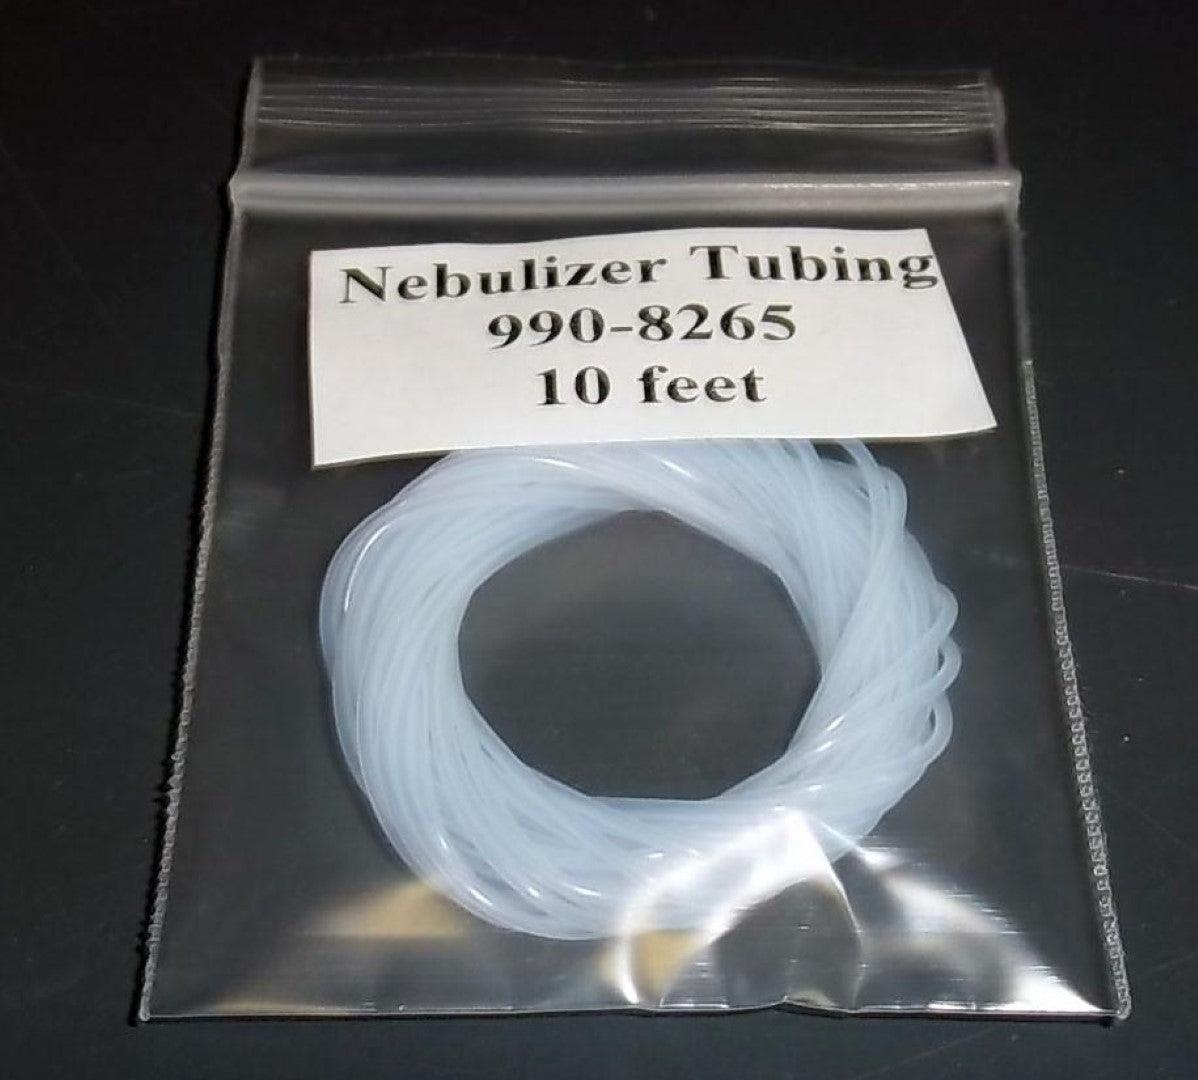 BUCK Scientific BS990-8265 Nebulizer Tubing